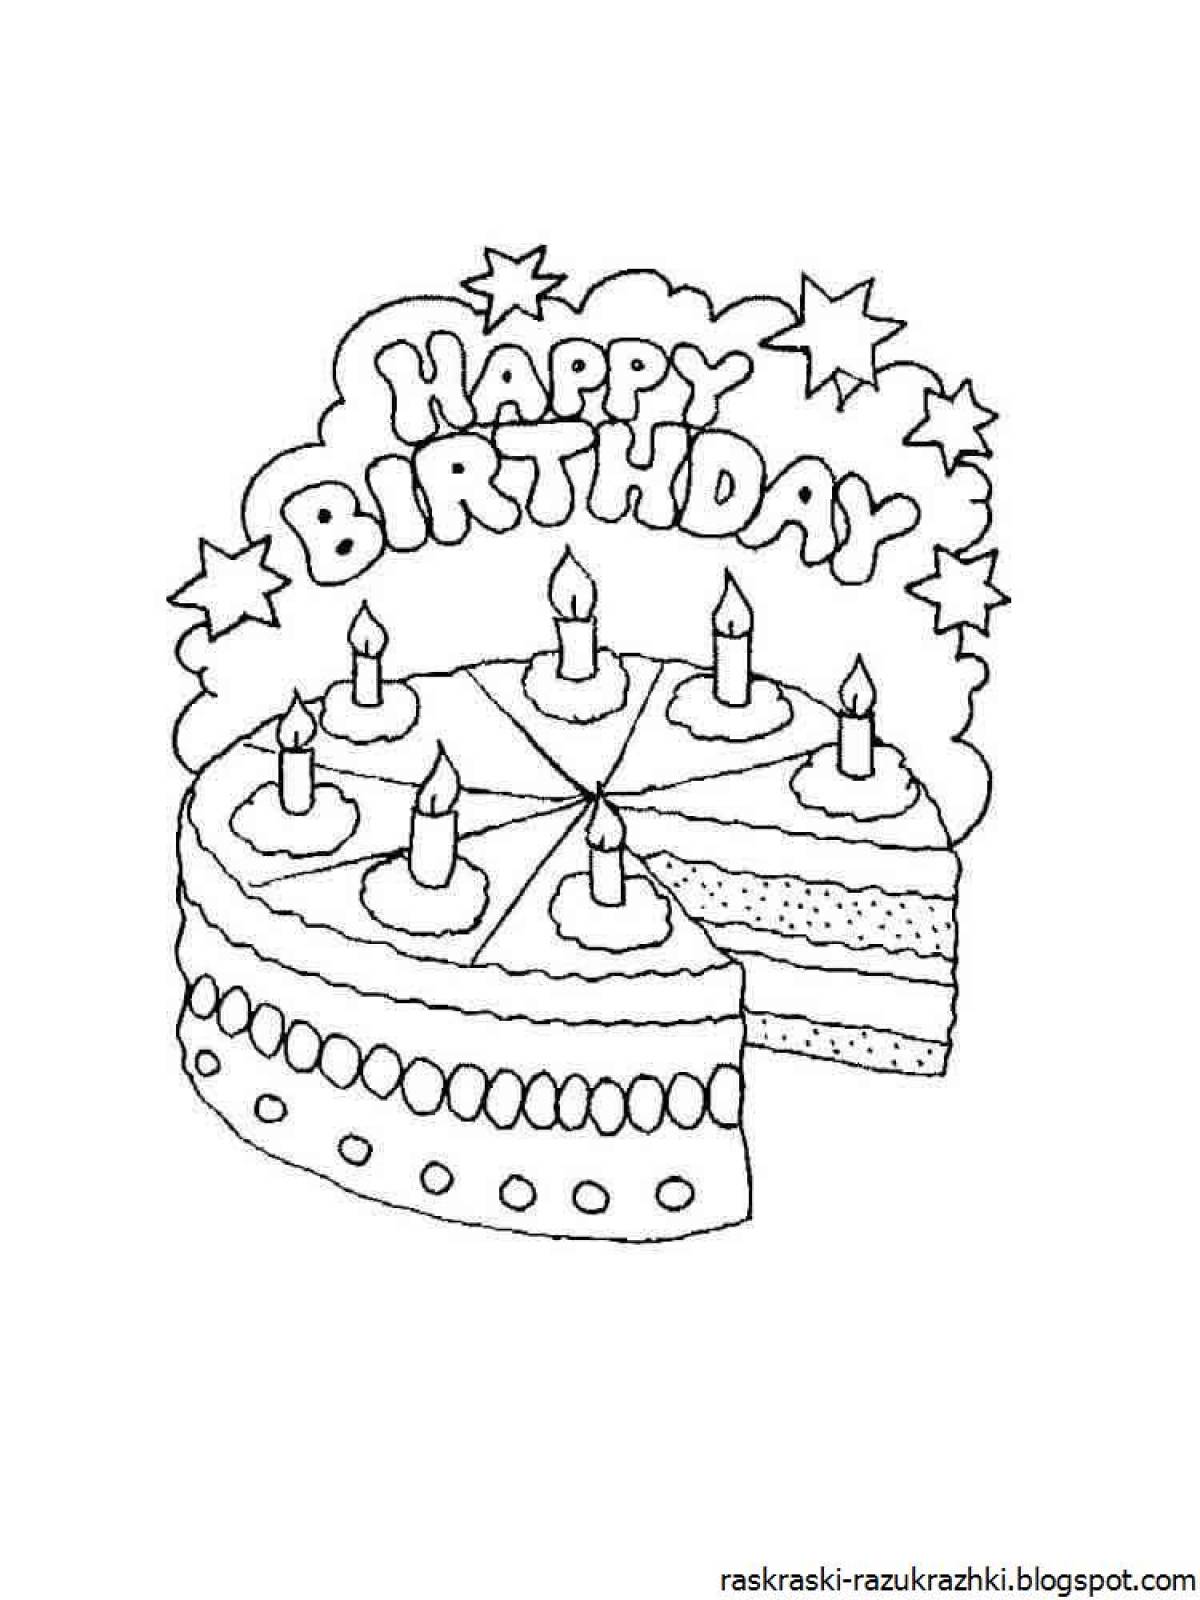 Распечатать картинку на торт. Раскраска "с днем рождения!". Открытка для раскрашивания с днем рождения. Рисунок бабушке на день рождения. Картинки с днём рождения раскраска.